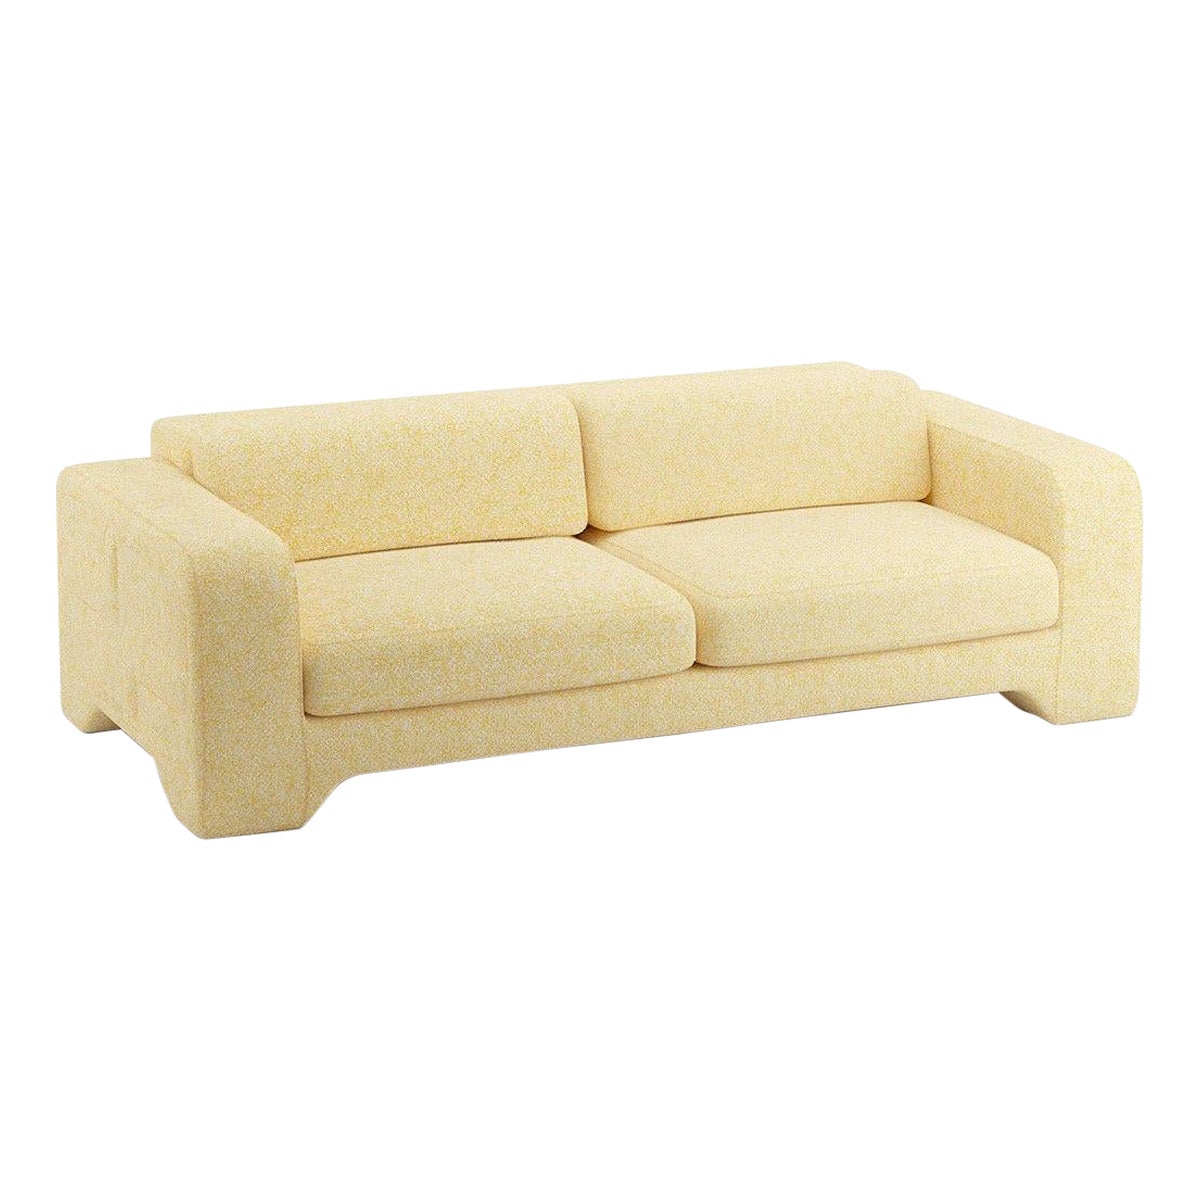 Popus Editions Giovanna 4 Seater Sofa in Straw Zanzi Linen Fabric